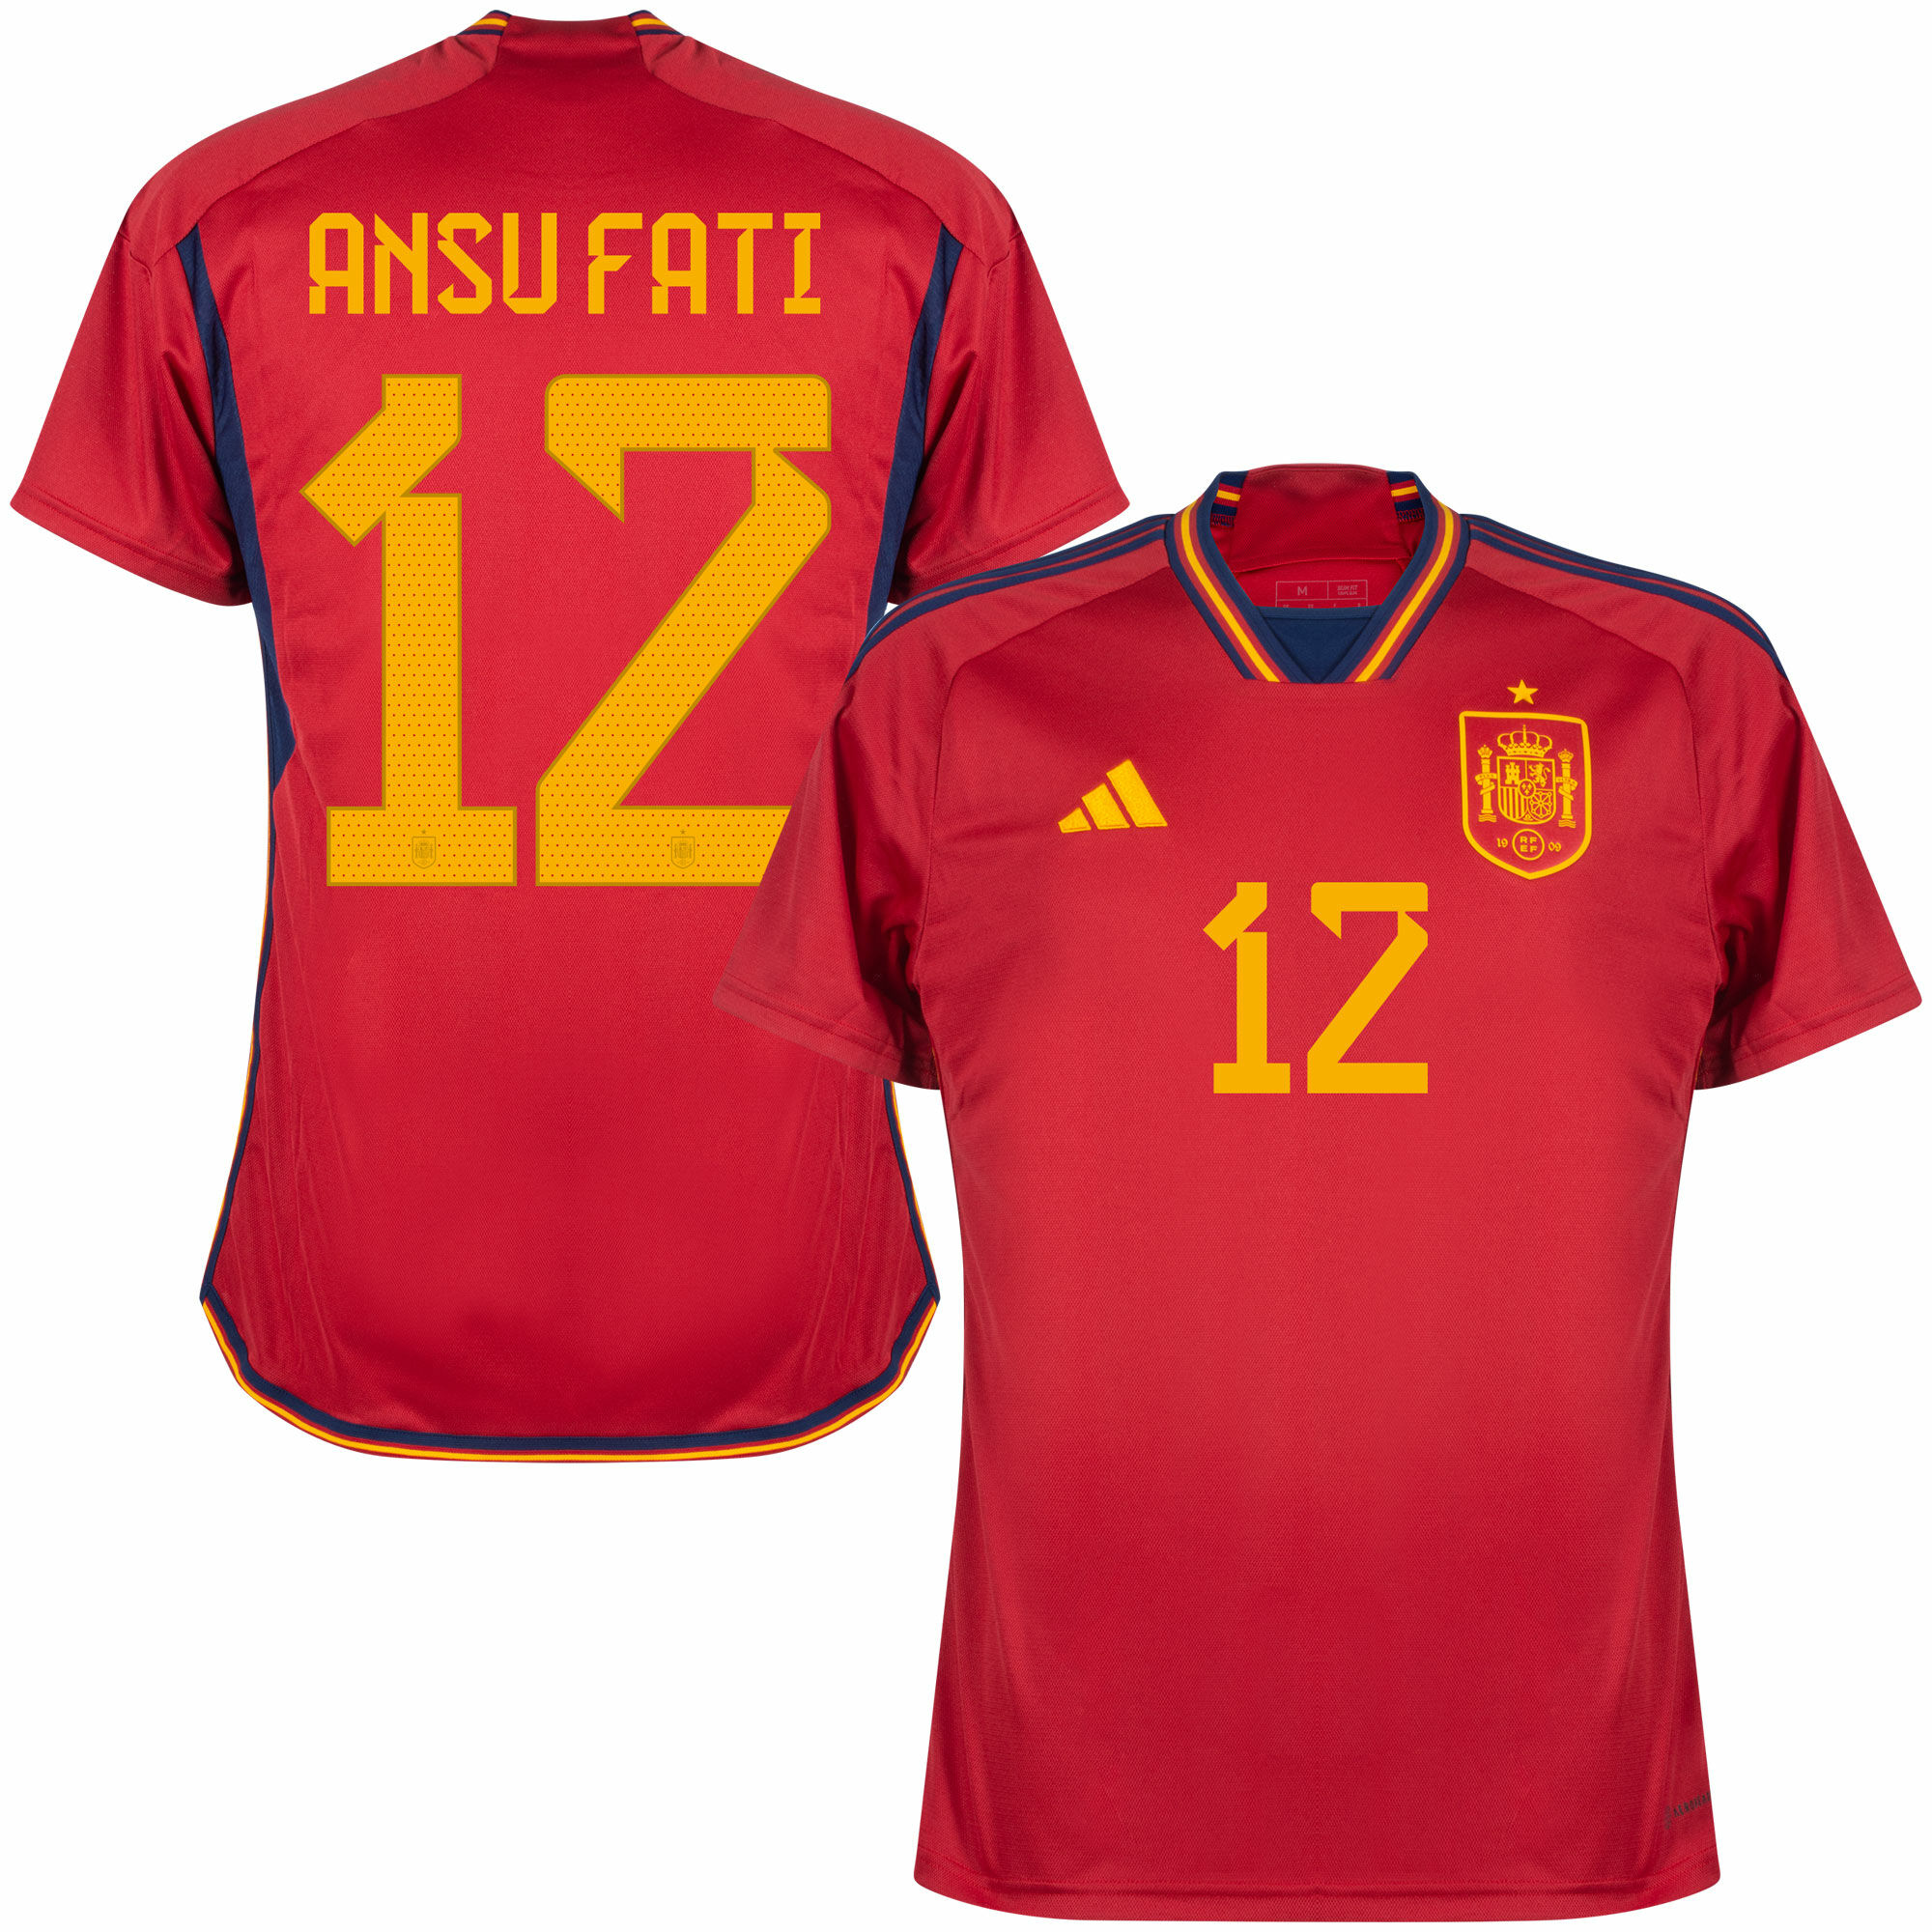 Španělsko - Dres fotbalový - oficiální potisk, Ansu Fati, číslo 12, červený, domácí, sezóna 2022/23